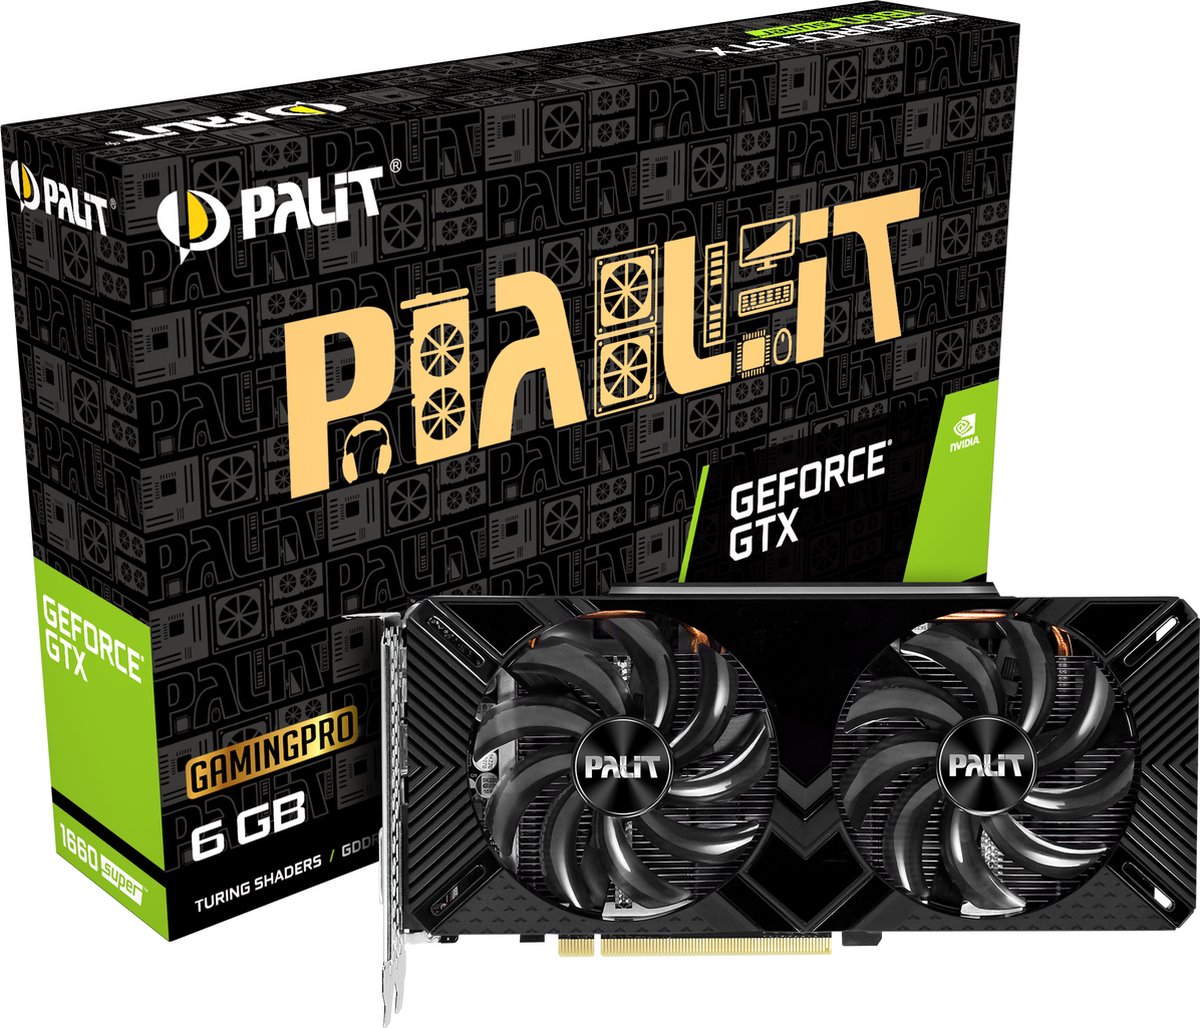 Palit NE6166S018J9-1160A-1, GeForce GTX 1660 SUPER, 6 GB, GDDR6, 192 Bit, 7680 x 4320 Pixels, PCI Express x16 3.0